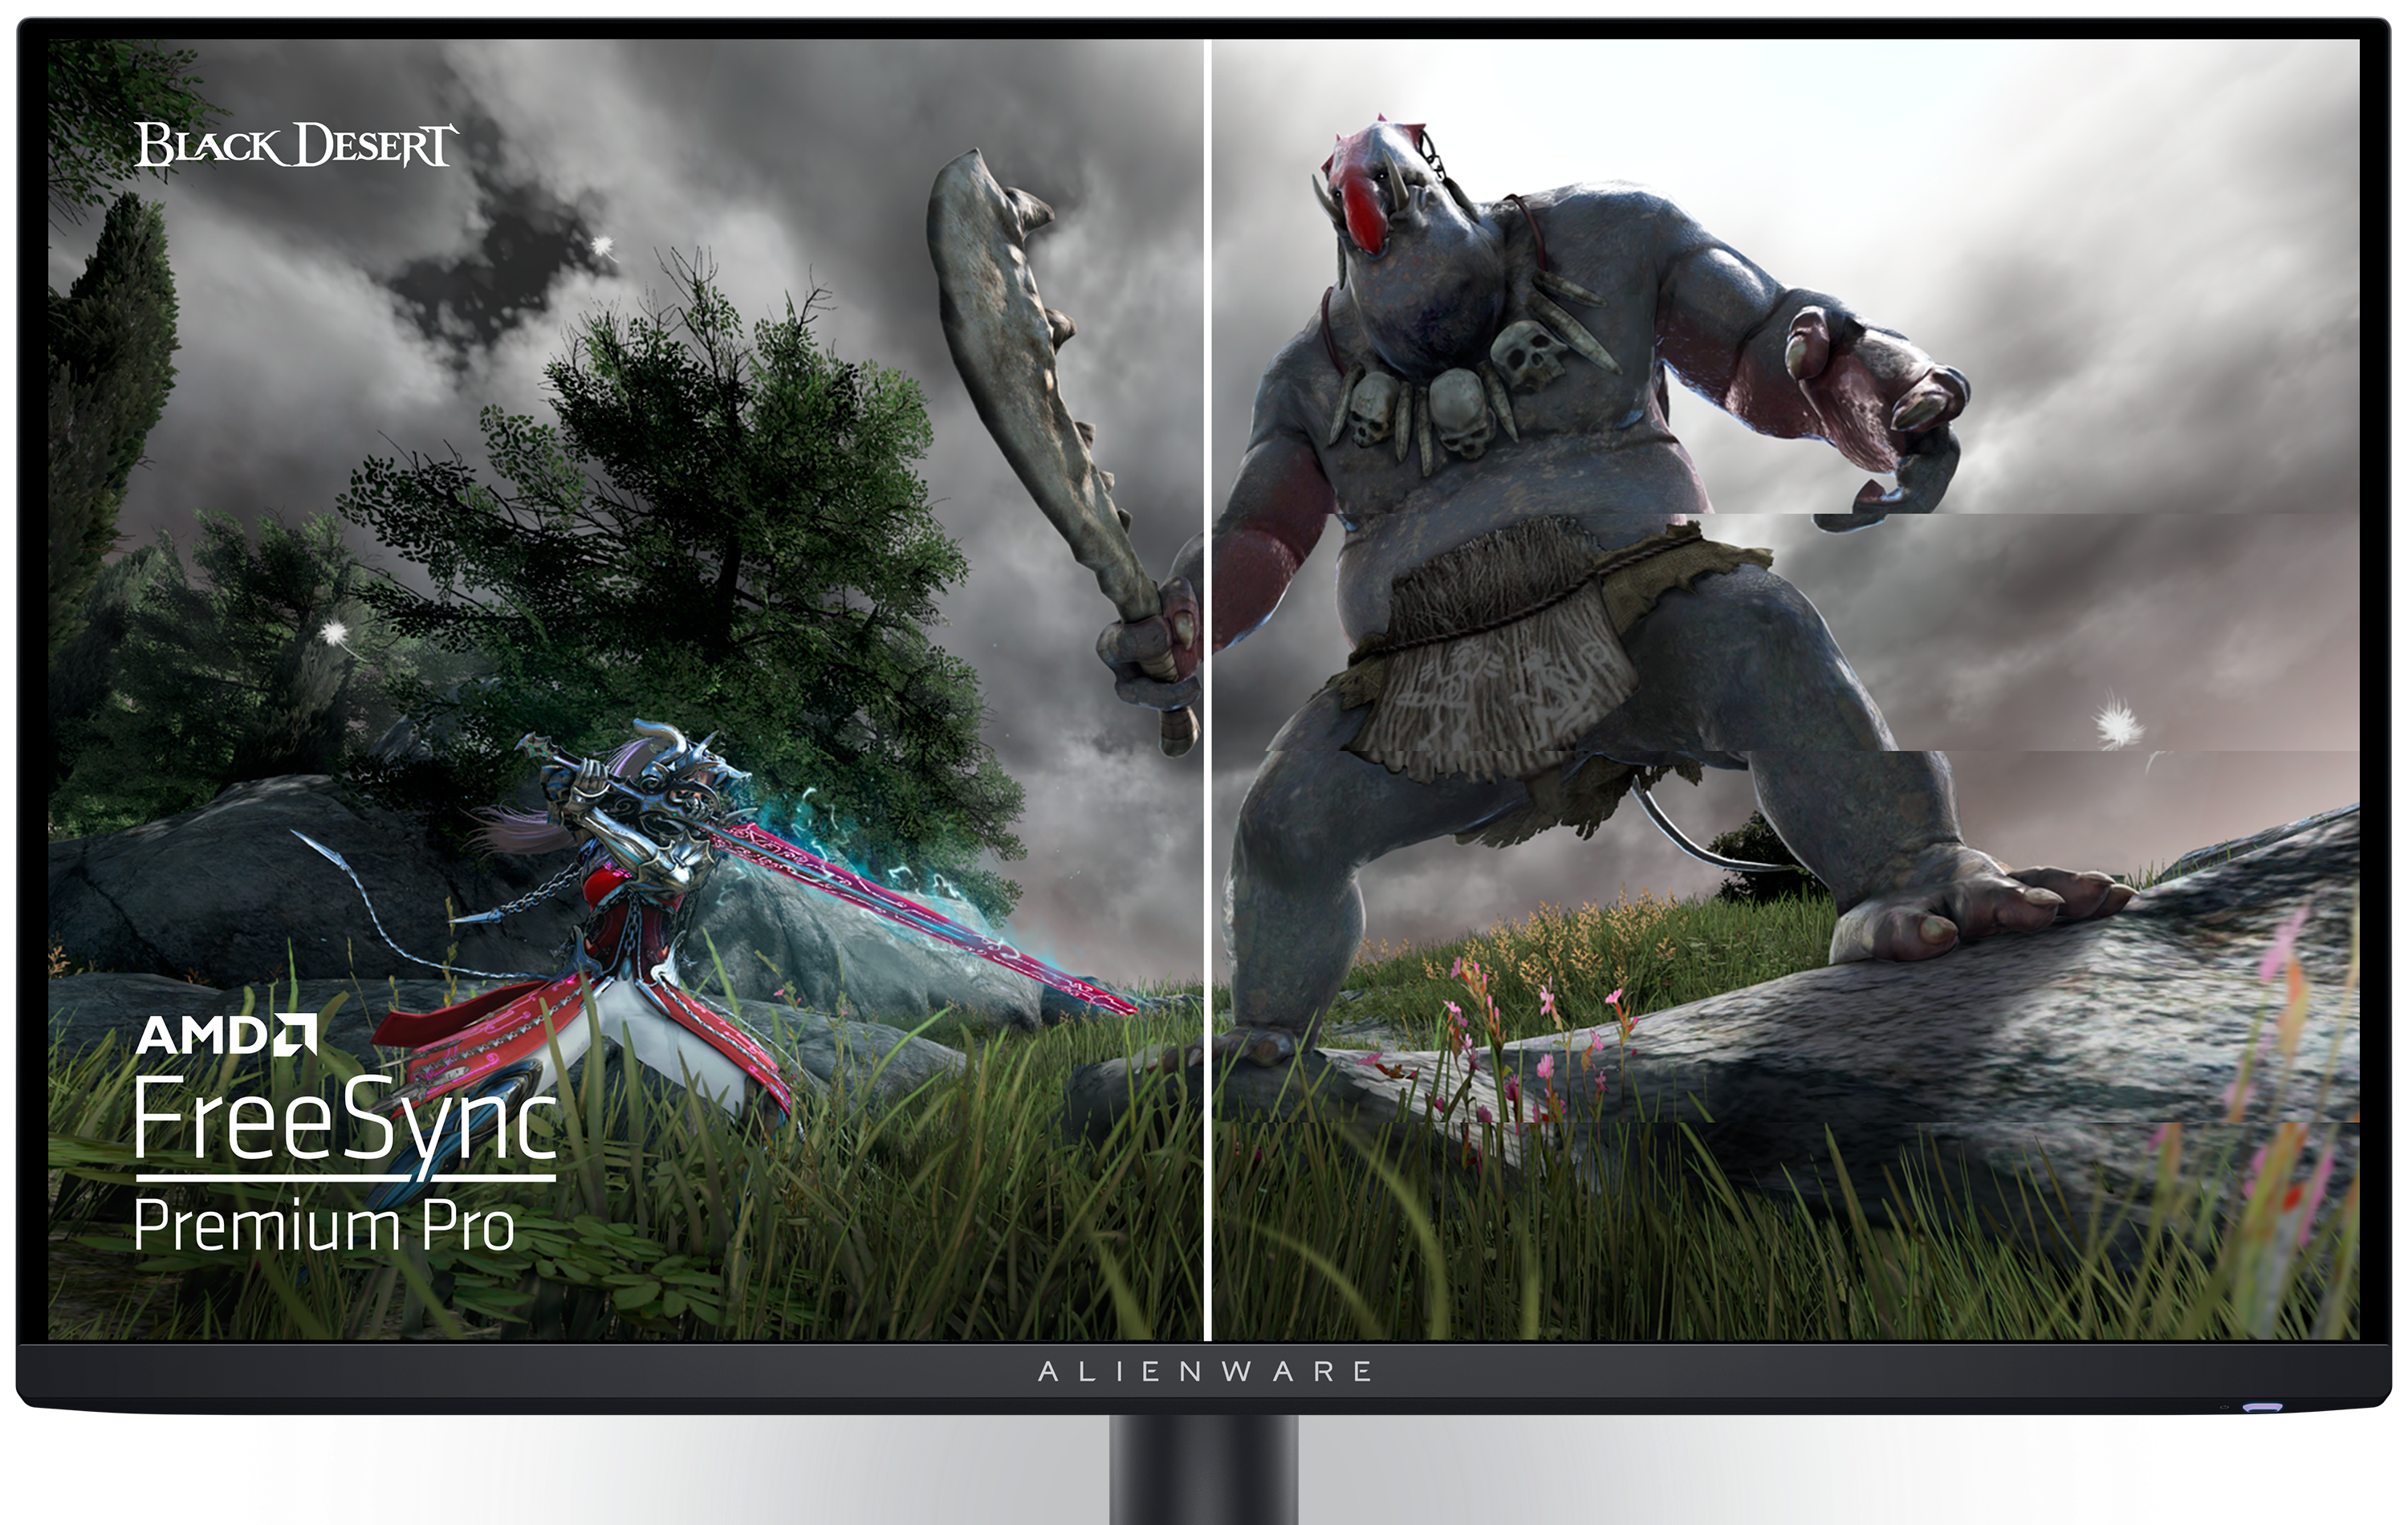 Écran gaming Dell AW2725DF affichant une image du jeu Black Desert et un logo AMD à l’écran.